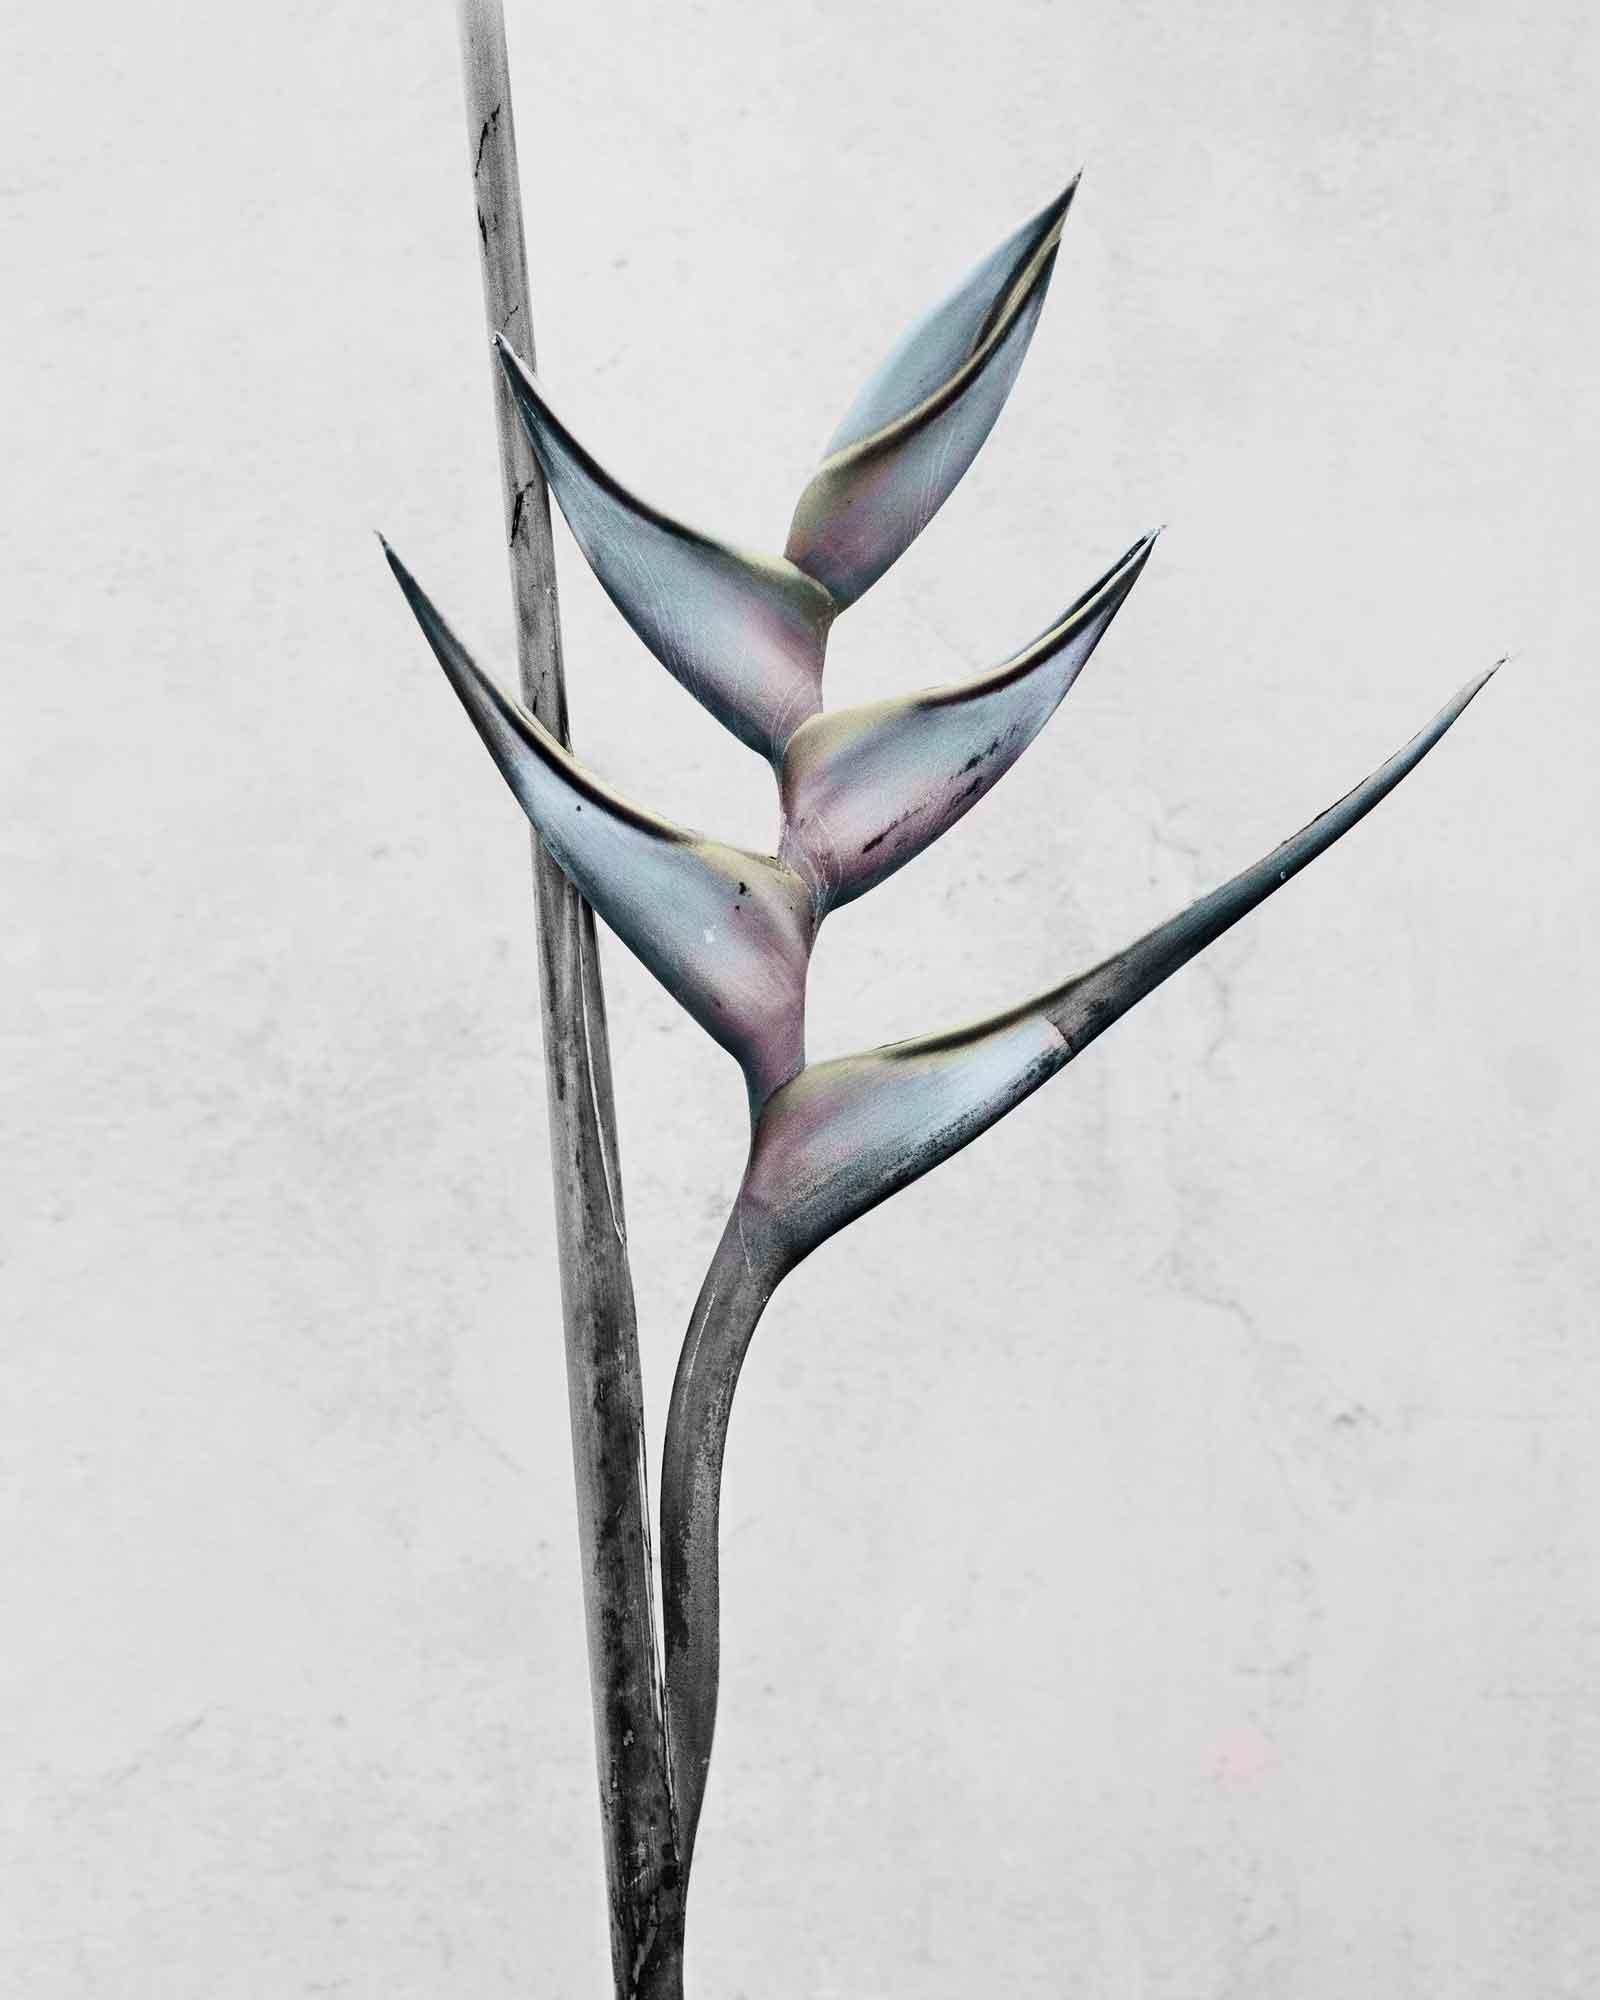 Vee Speers Color Photograph - Botanica #13 (Heliconia Bihai)